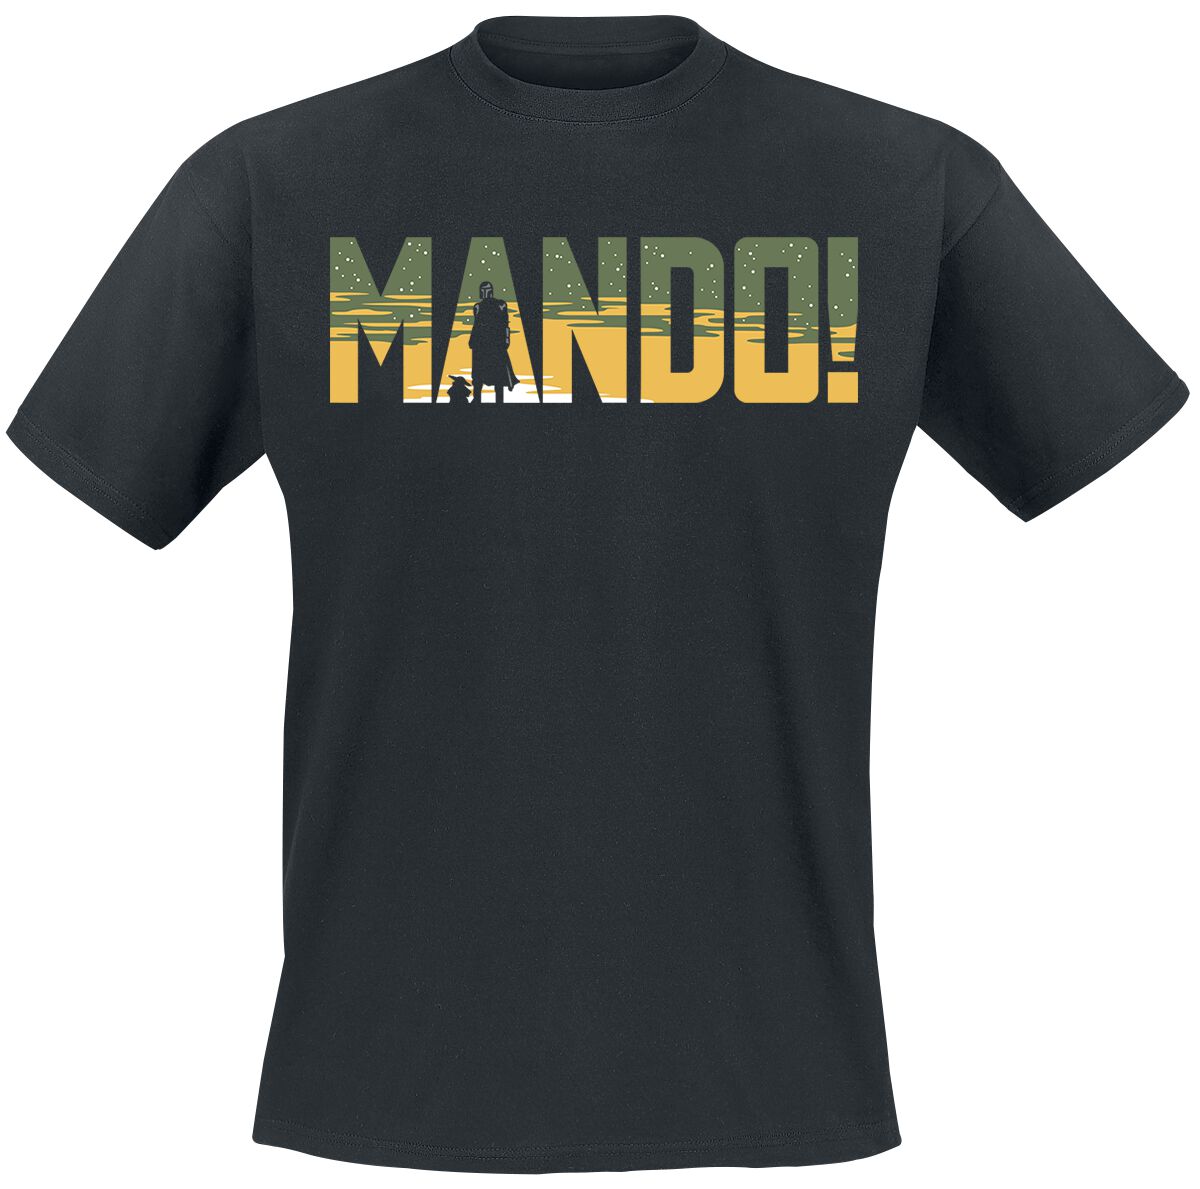 Star Wars T-Shirt - The Mandalorian - Season 3 - Mando - S bis XXL - für Männer - Größe L - schwarz  - EMP exklusives Merchandise!